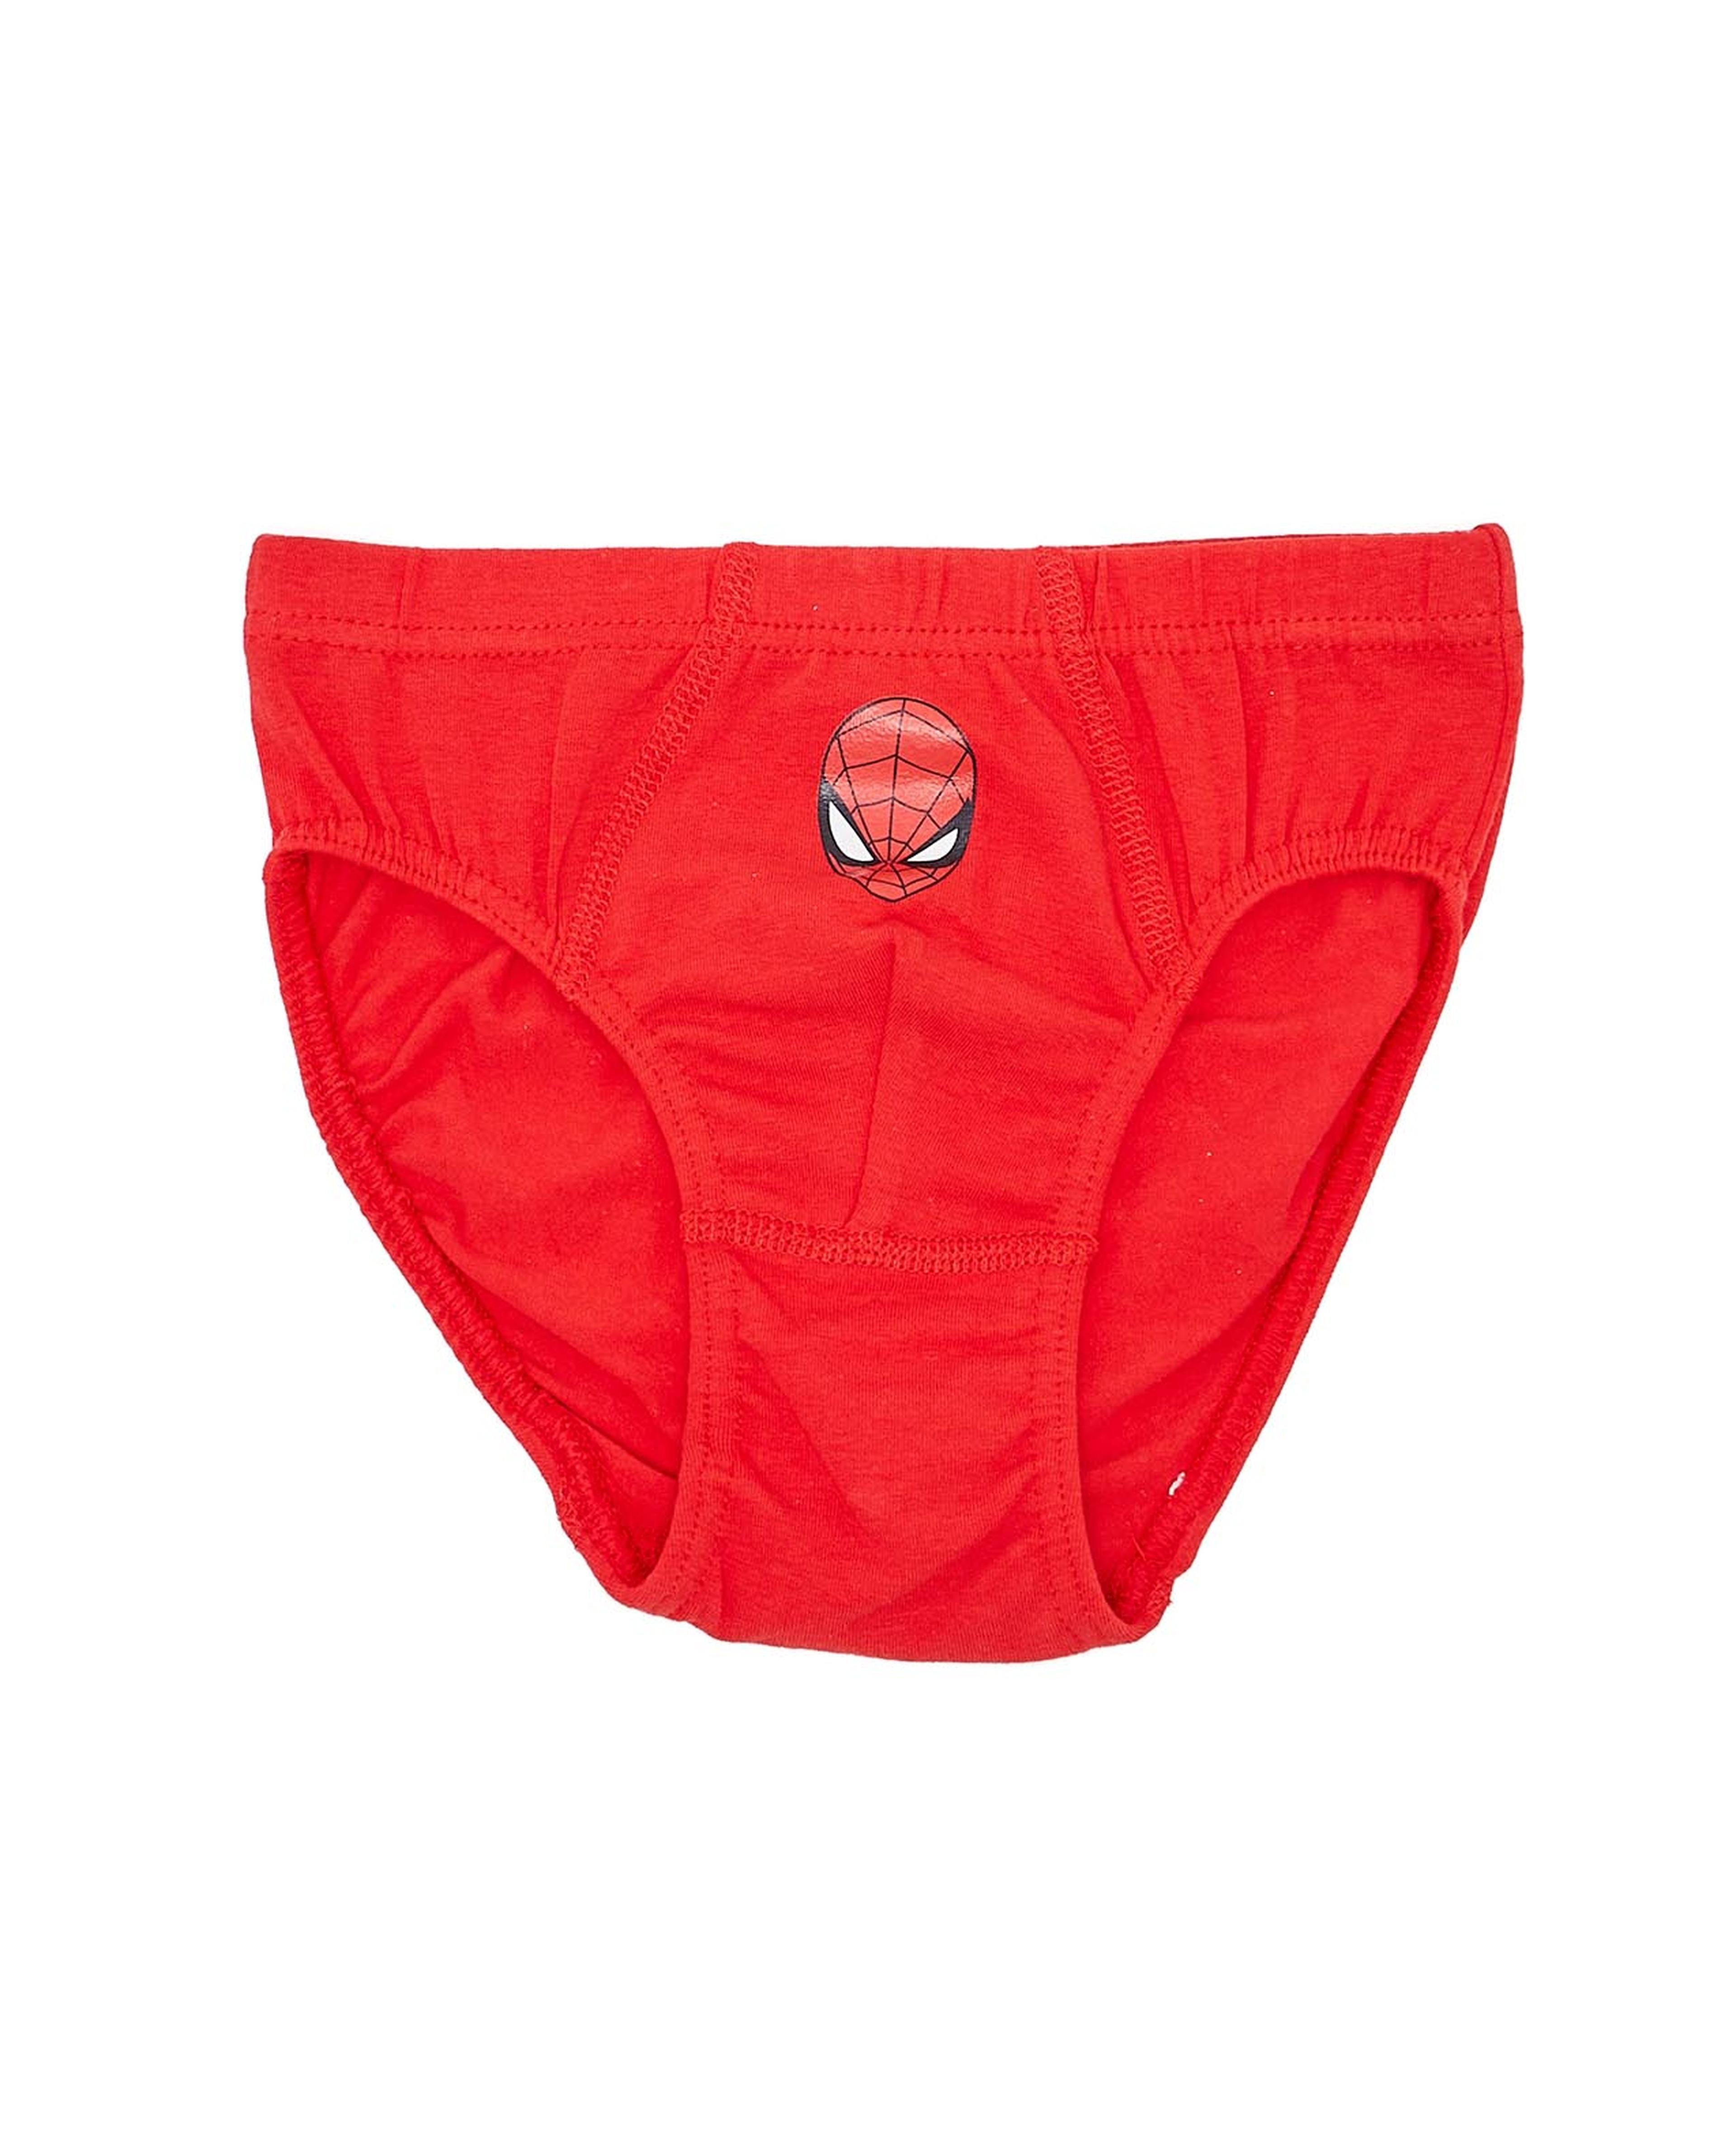 Boys' Spiderman Underwear